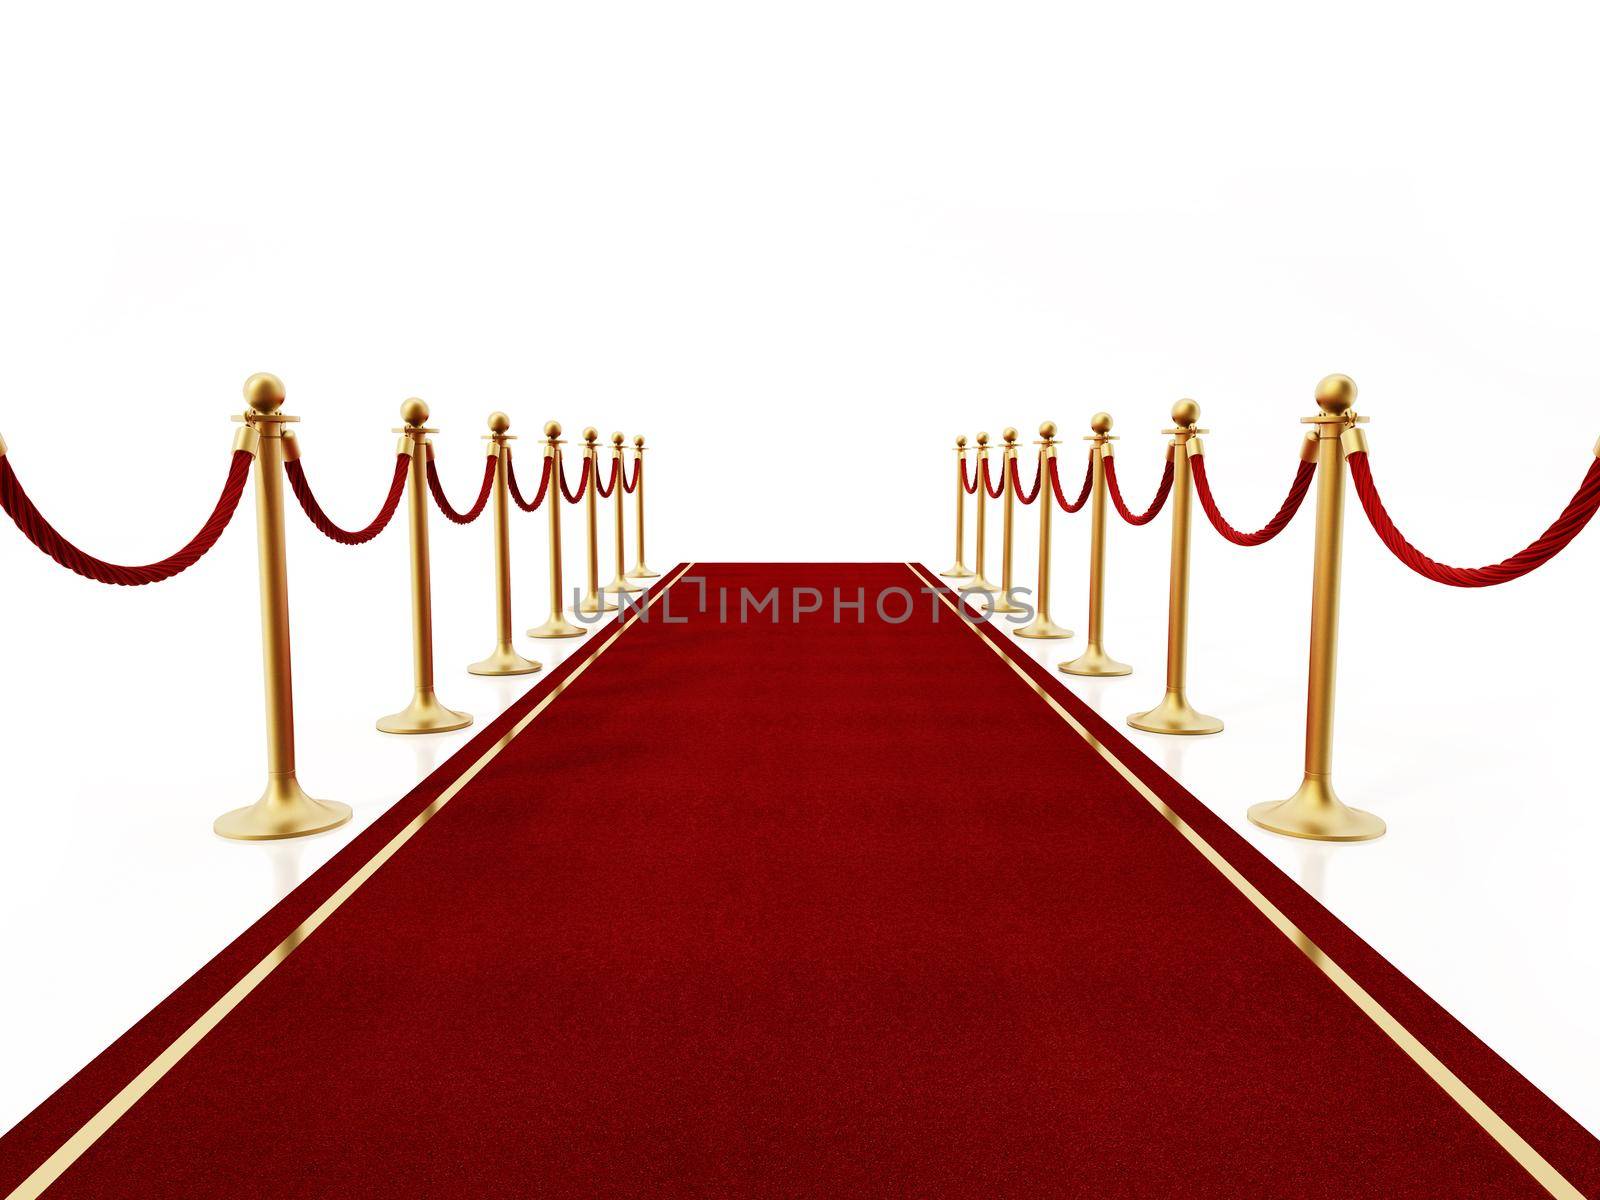 Red carpet and velvet ropes isolated on white background. 3D illustration.